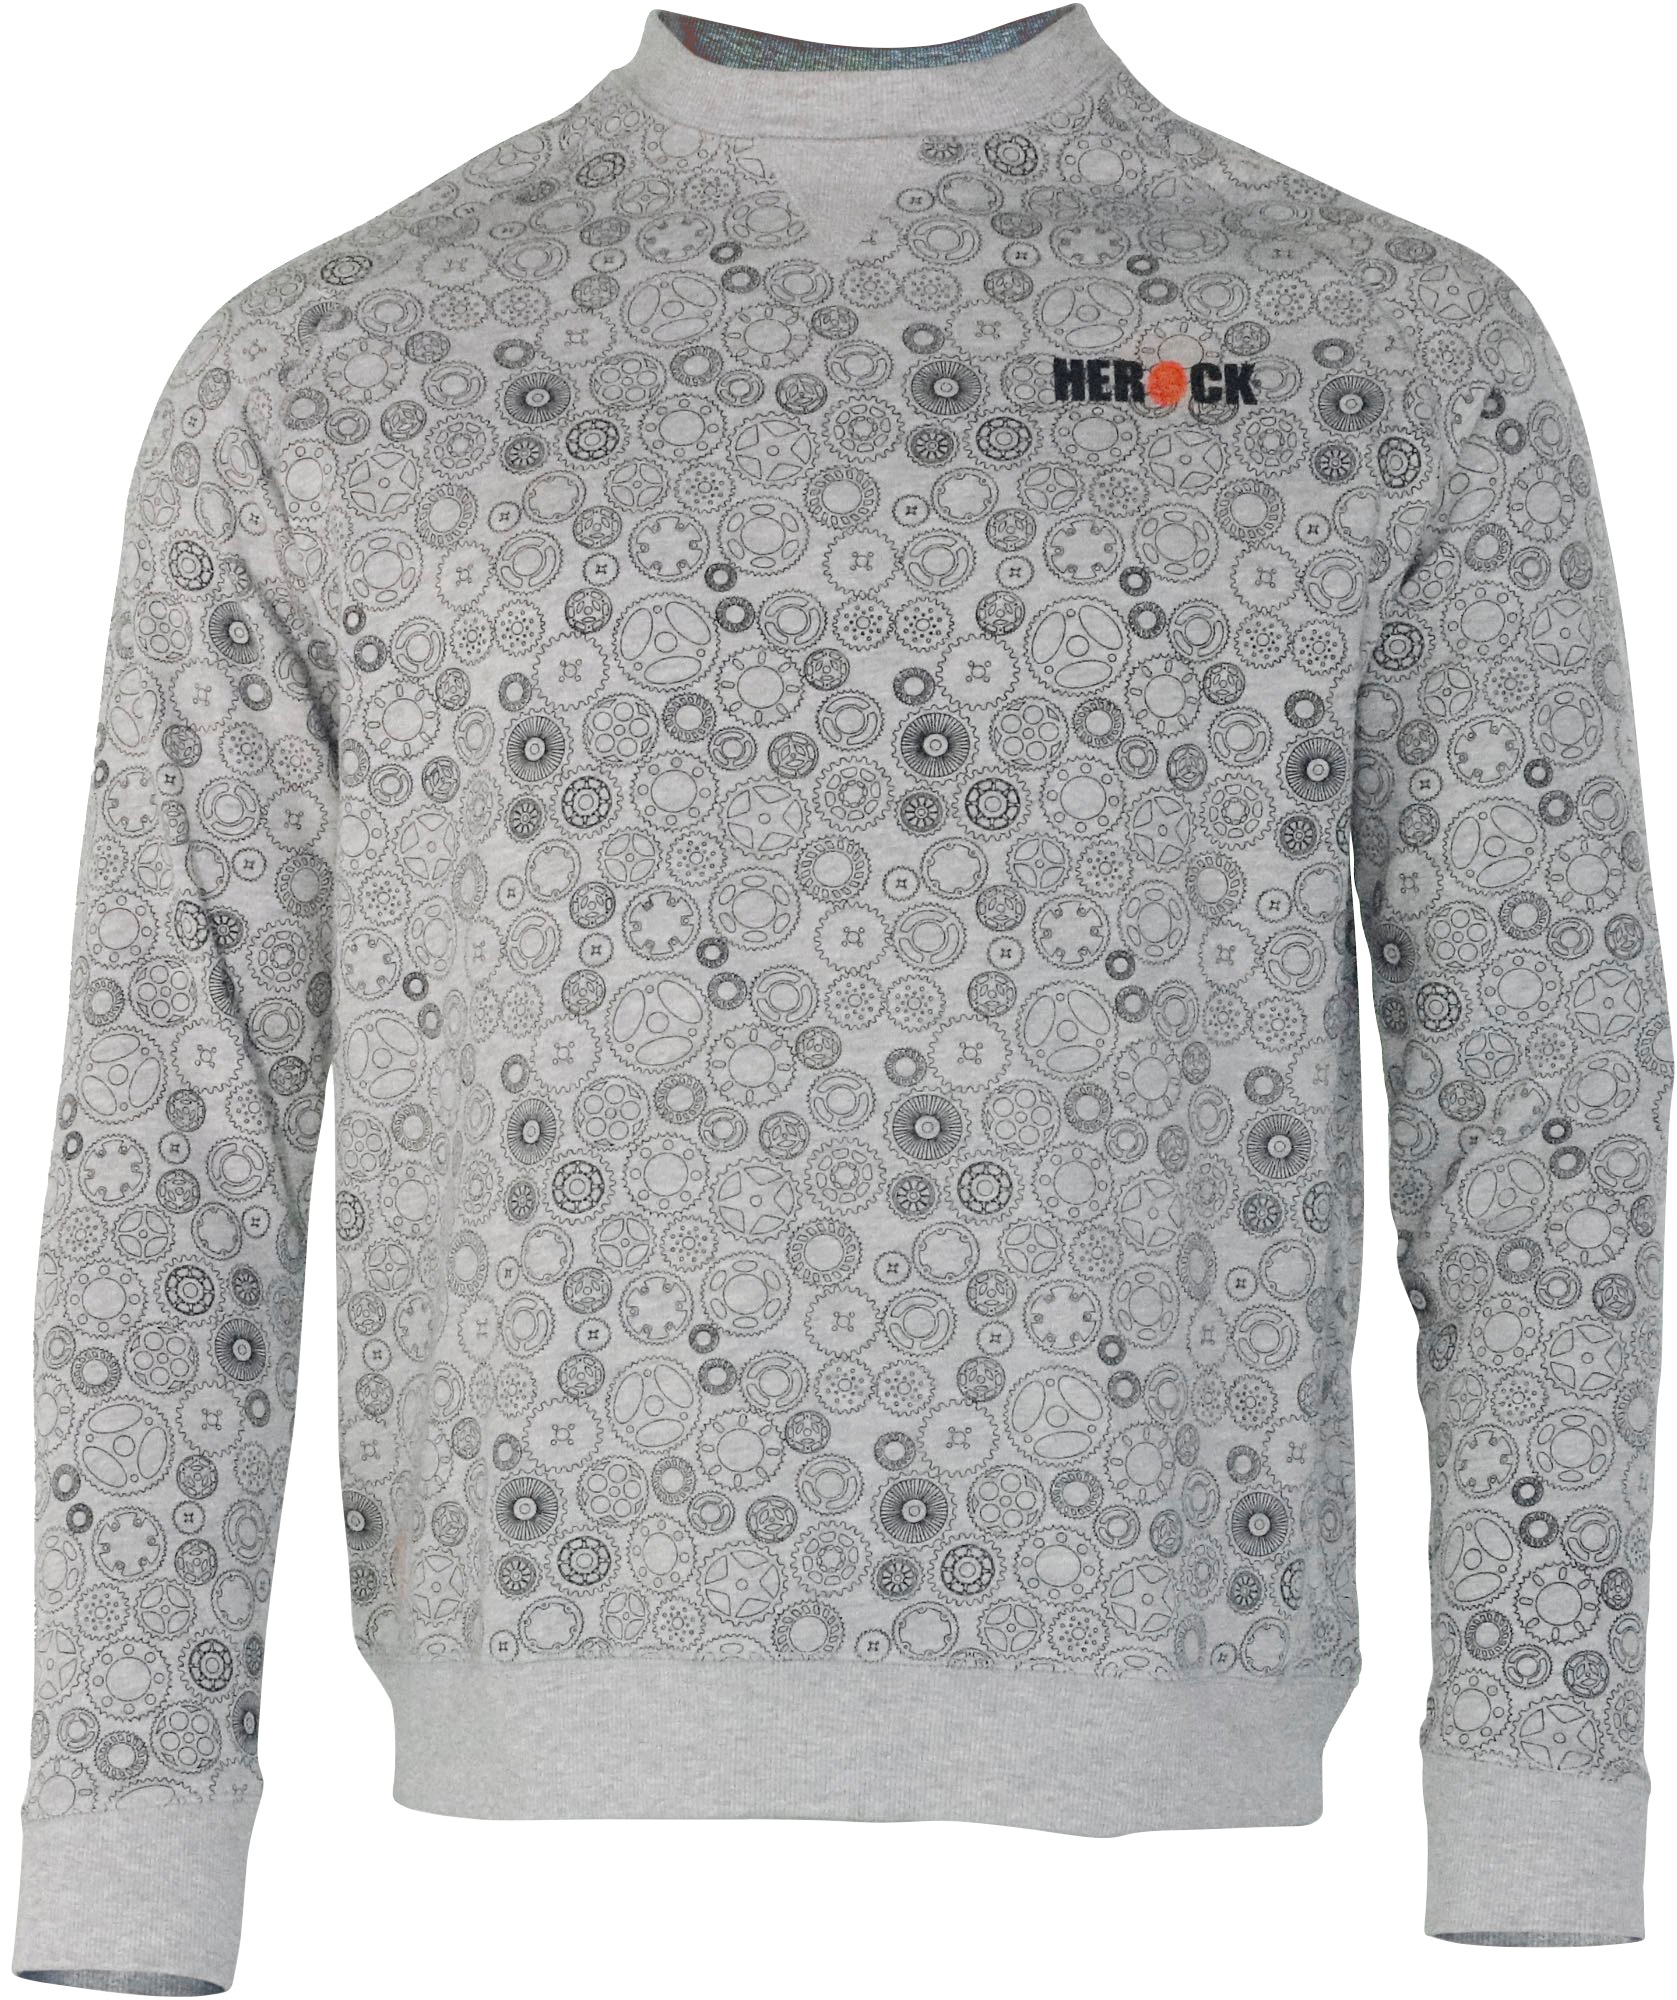 Herock®-Aufdruck, »Engineer«, Tragegefühl BAUR angenehmes Mit Zahnrad-Muster Herock Sweater & bestellen |